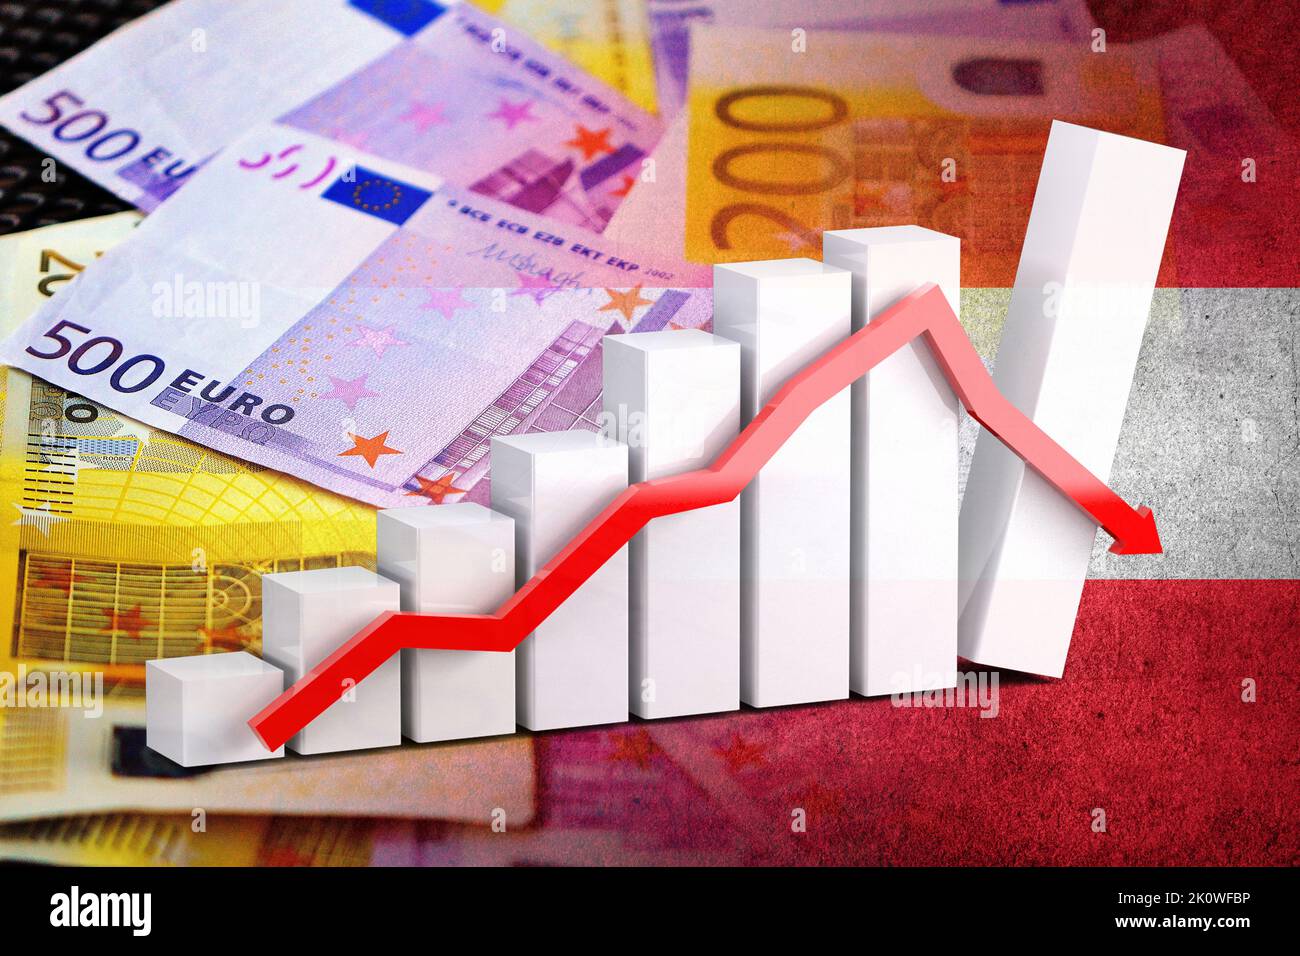 Wirtschaftsdiagramm: Abwärtspfeil, Euro-Cash-Banknoten und Österreich-Flagge (Geld, Wirtschaft, Unternehmen, Finanzen, Krise) Stockfoto